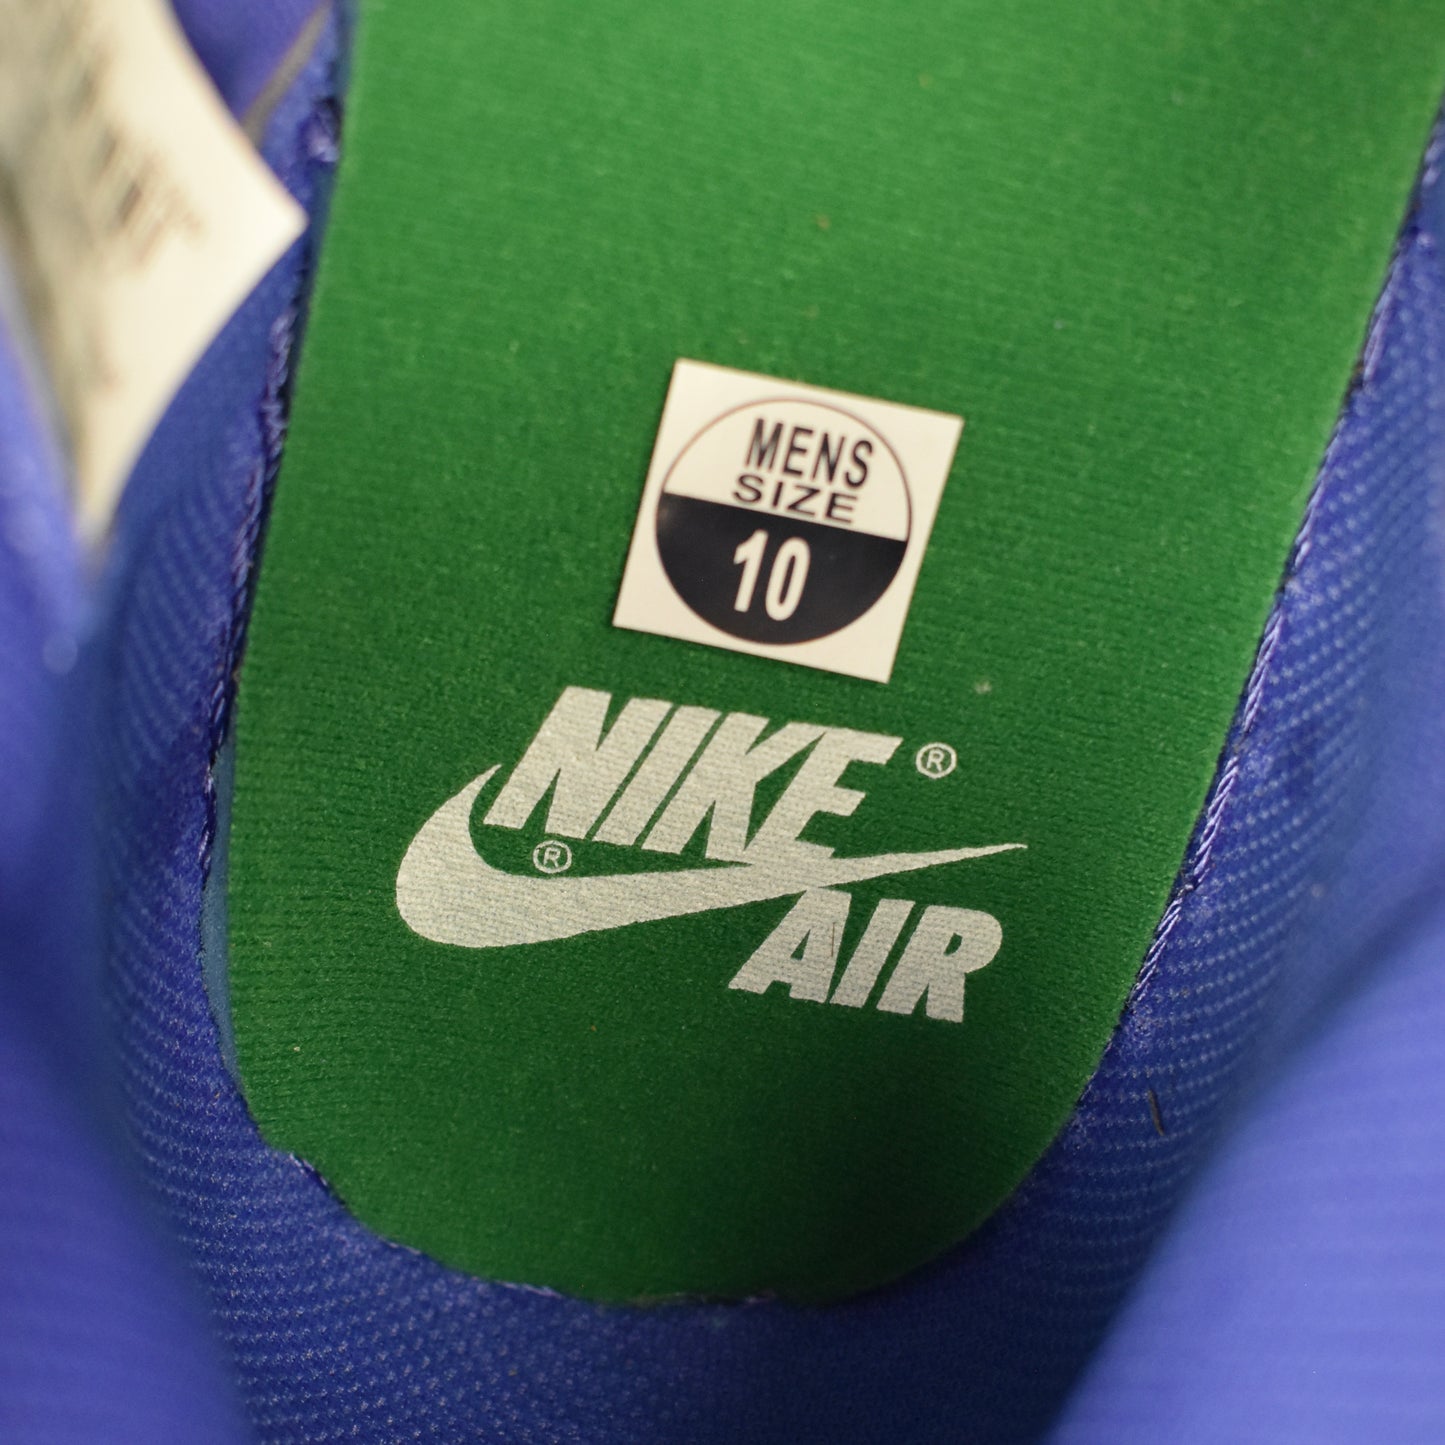 Nike - Air Jordan 1 Retro Hi OG Gatorade 'Grape'